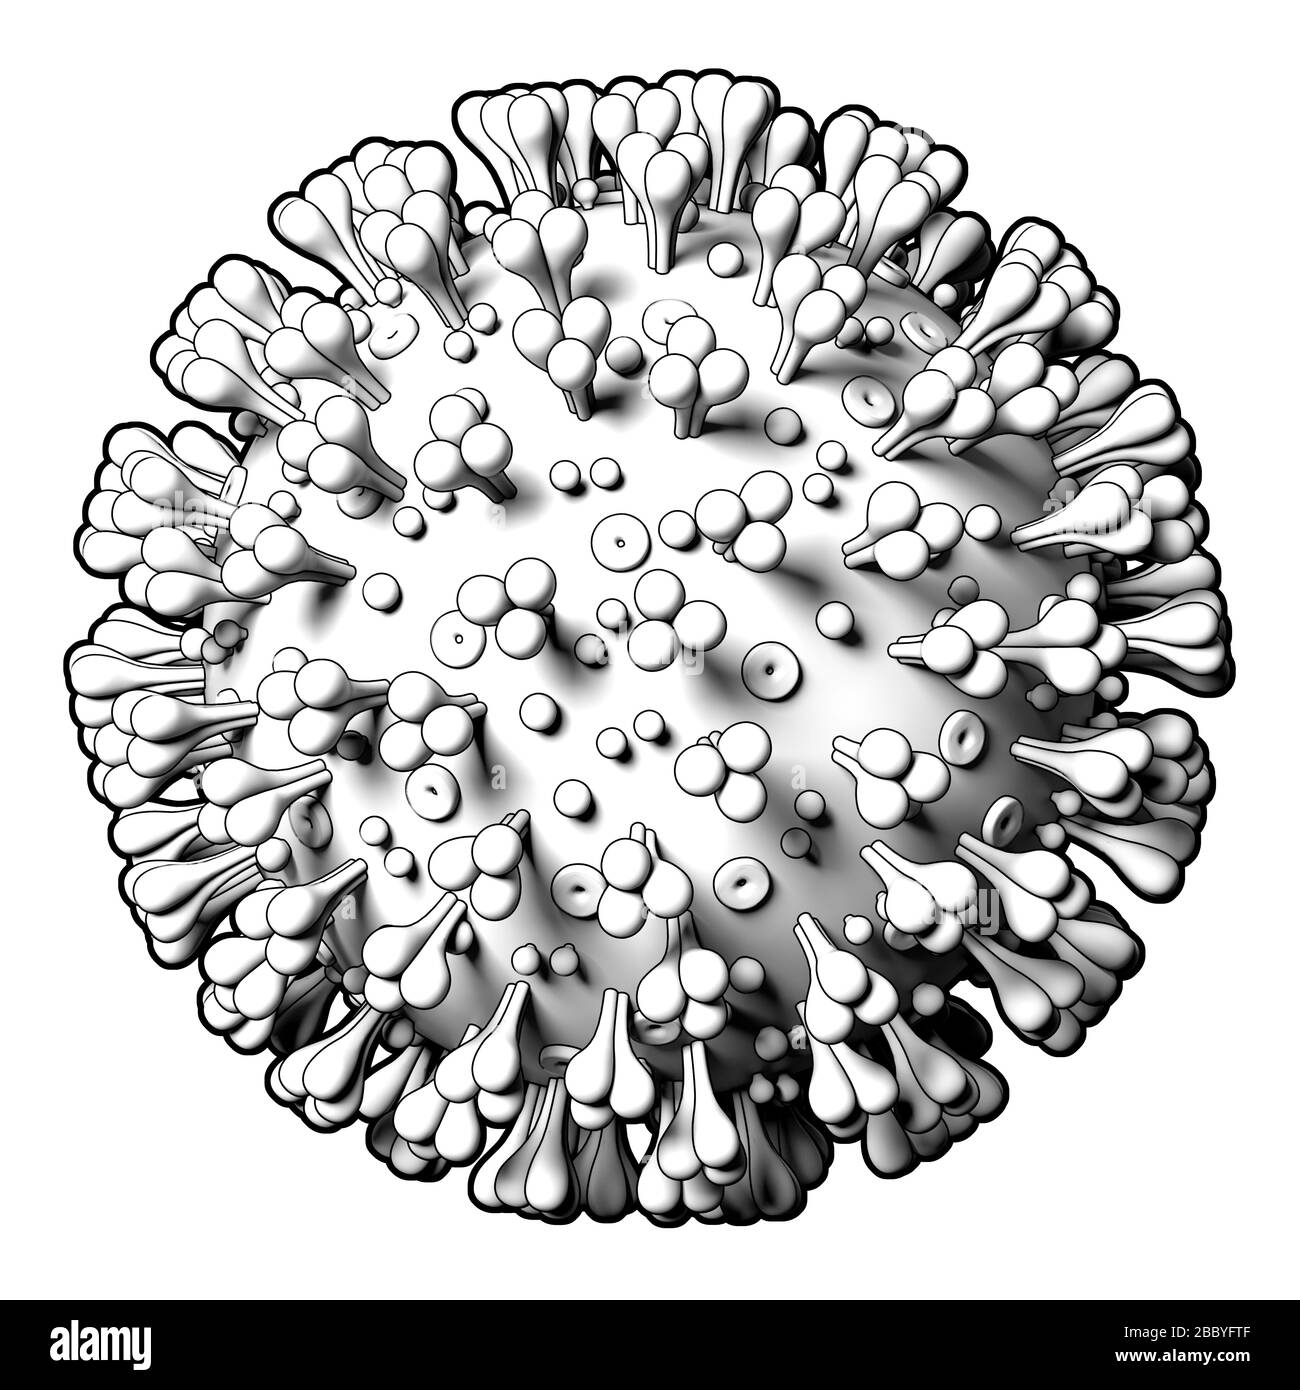 Coronavirus Covid19 modèle de virus sur fond blanc. Modèle graphique stylisé, schéma. Gros plan Banque D'Images